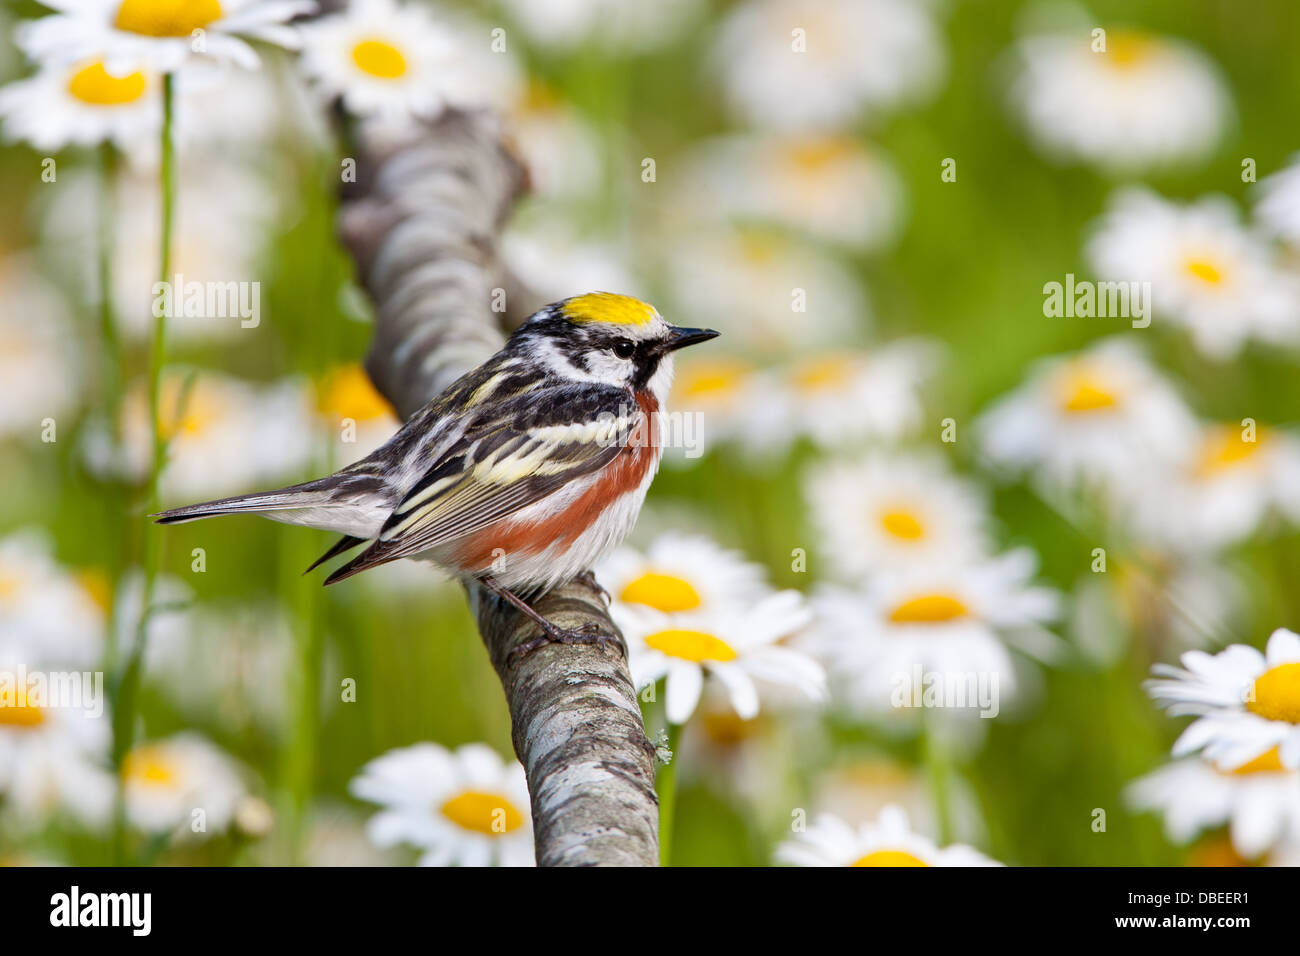 Castagno-Sided Warbler che perching vicino Daisies uccello songbird Ornitologia Scienza natura natura ambiente naturale Foto Stock